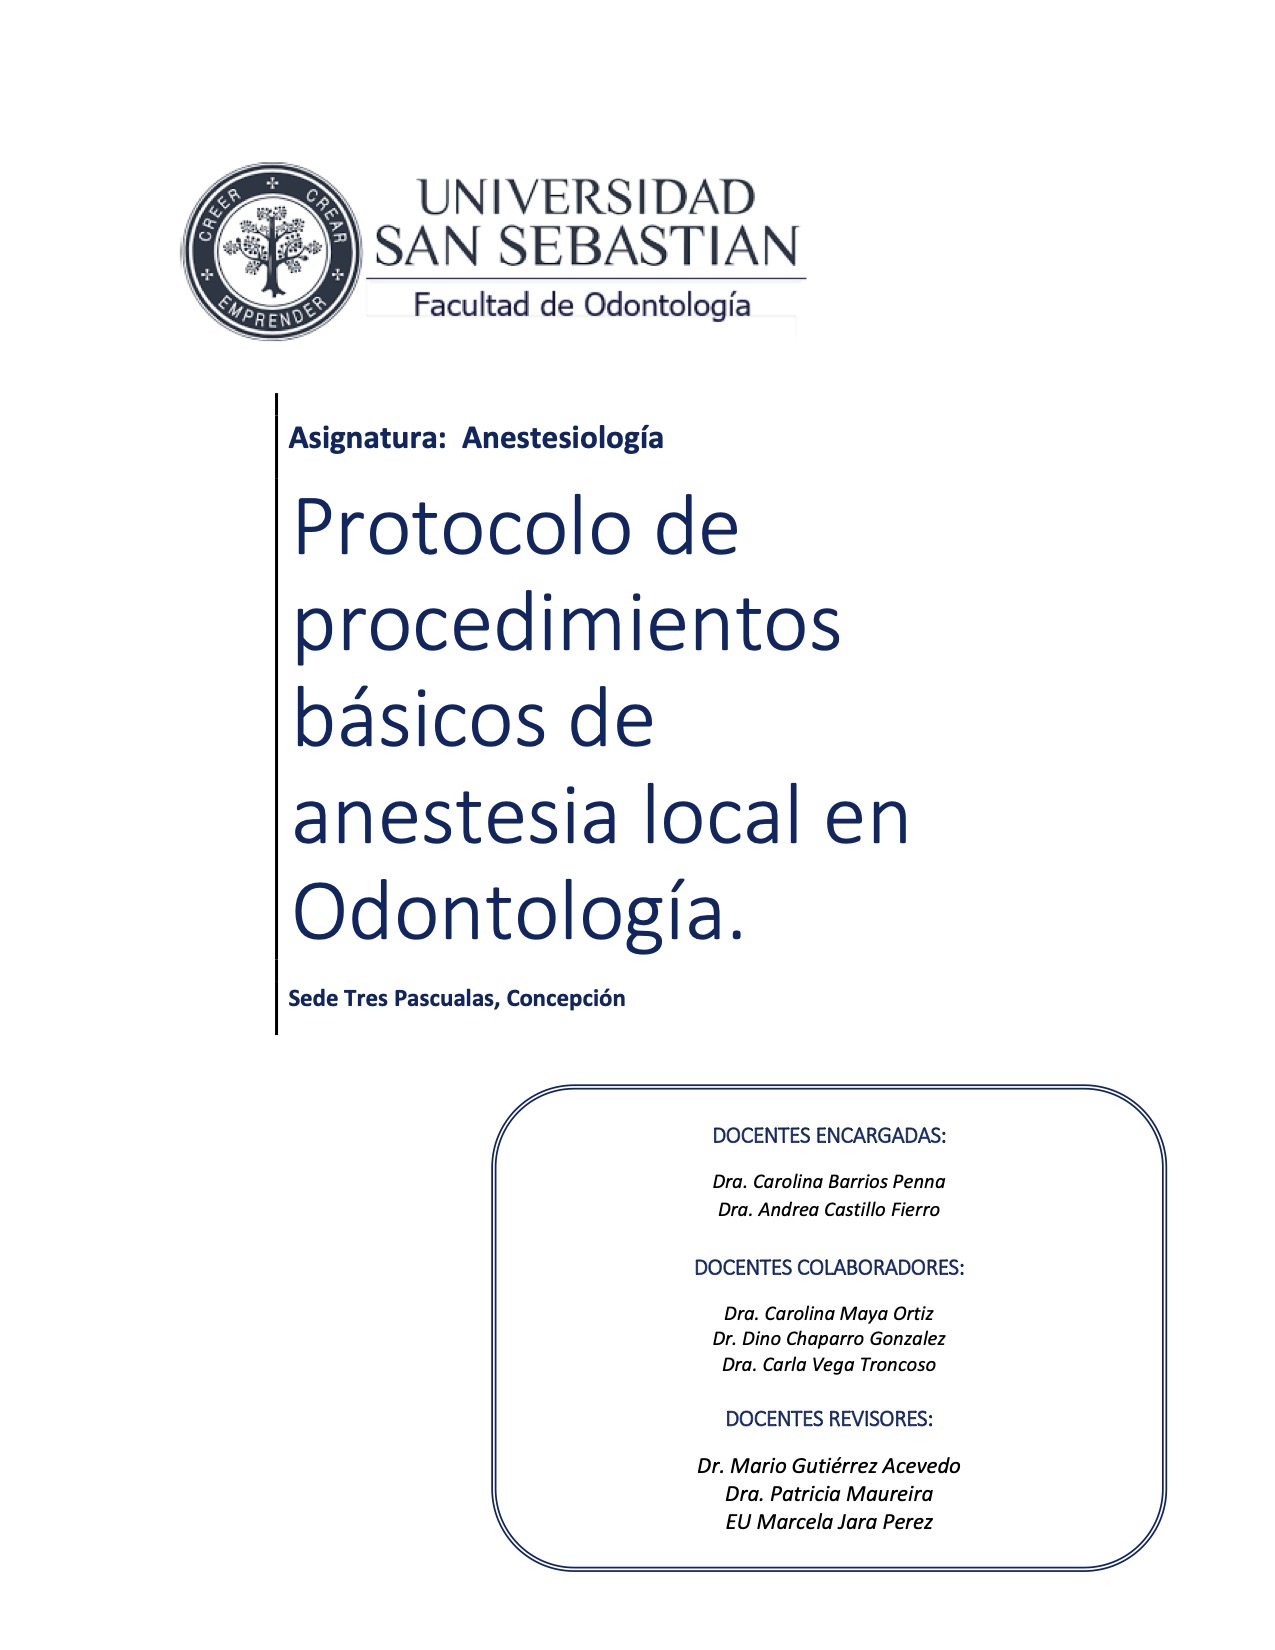 Protocolo-de-procedimientos-basicos-de-anestesia-local-en-odontologia